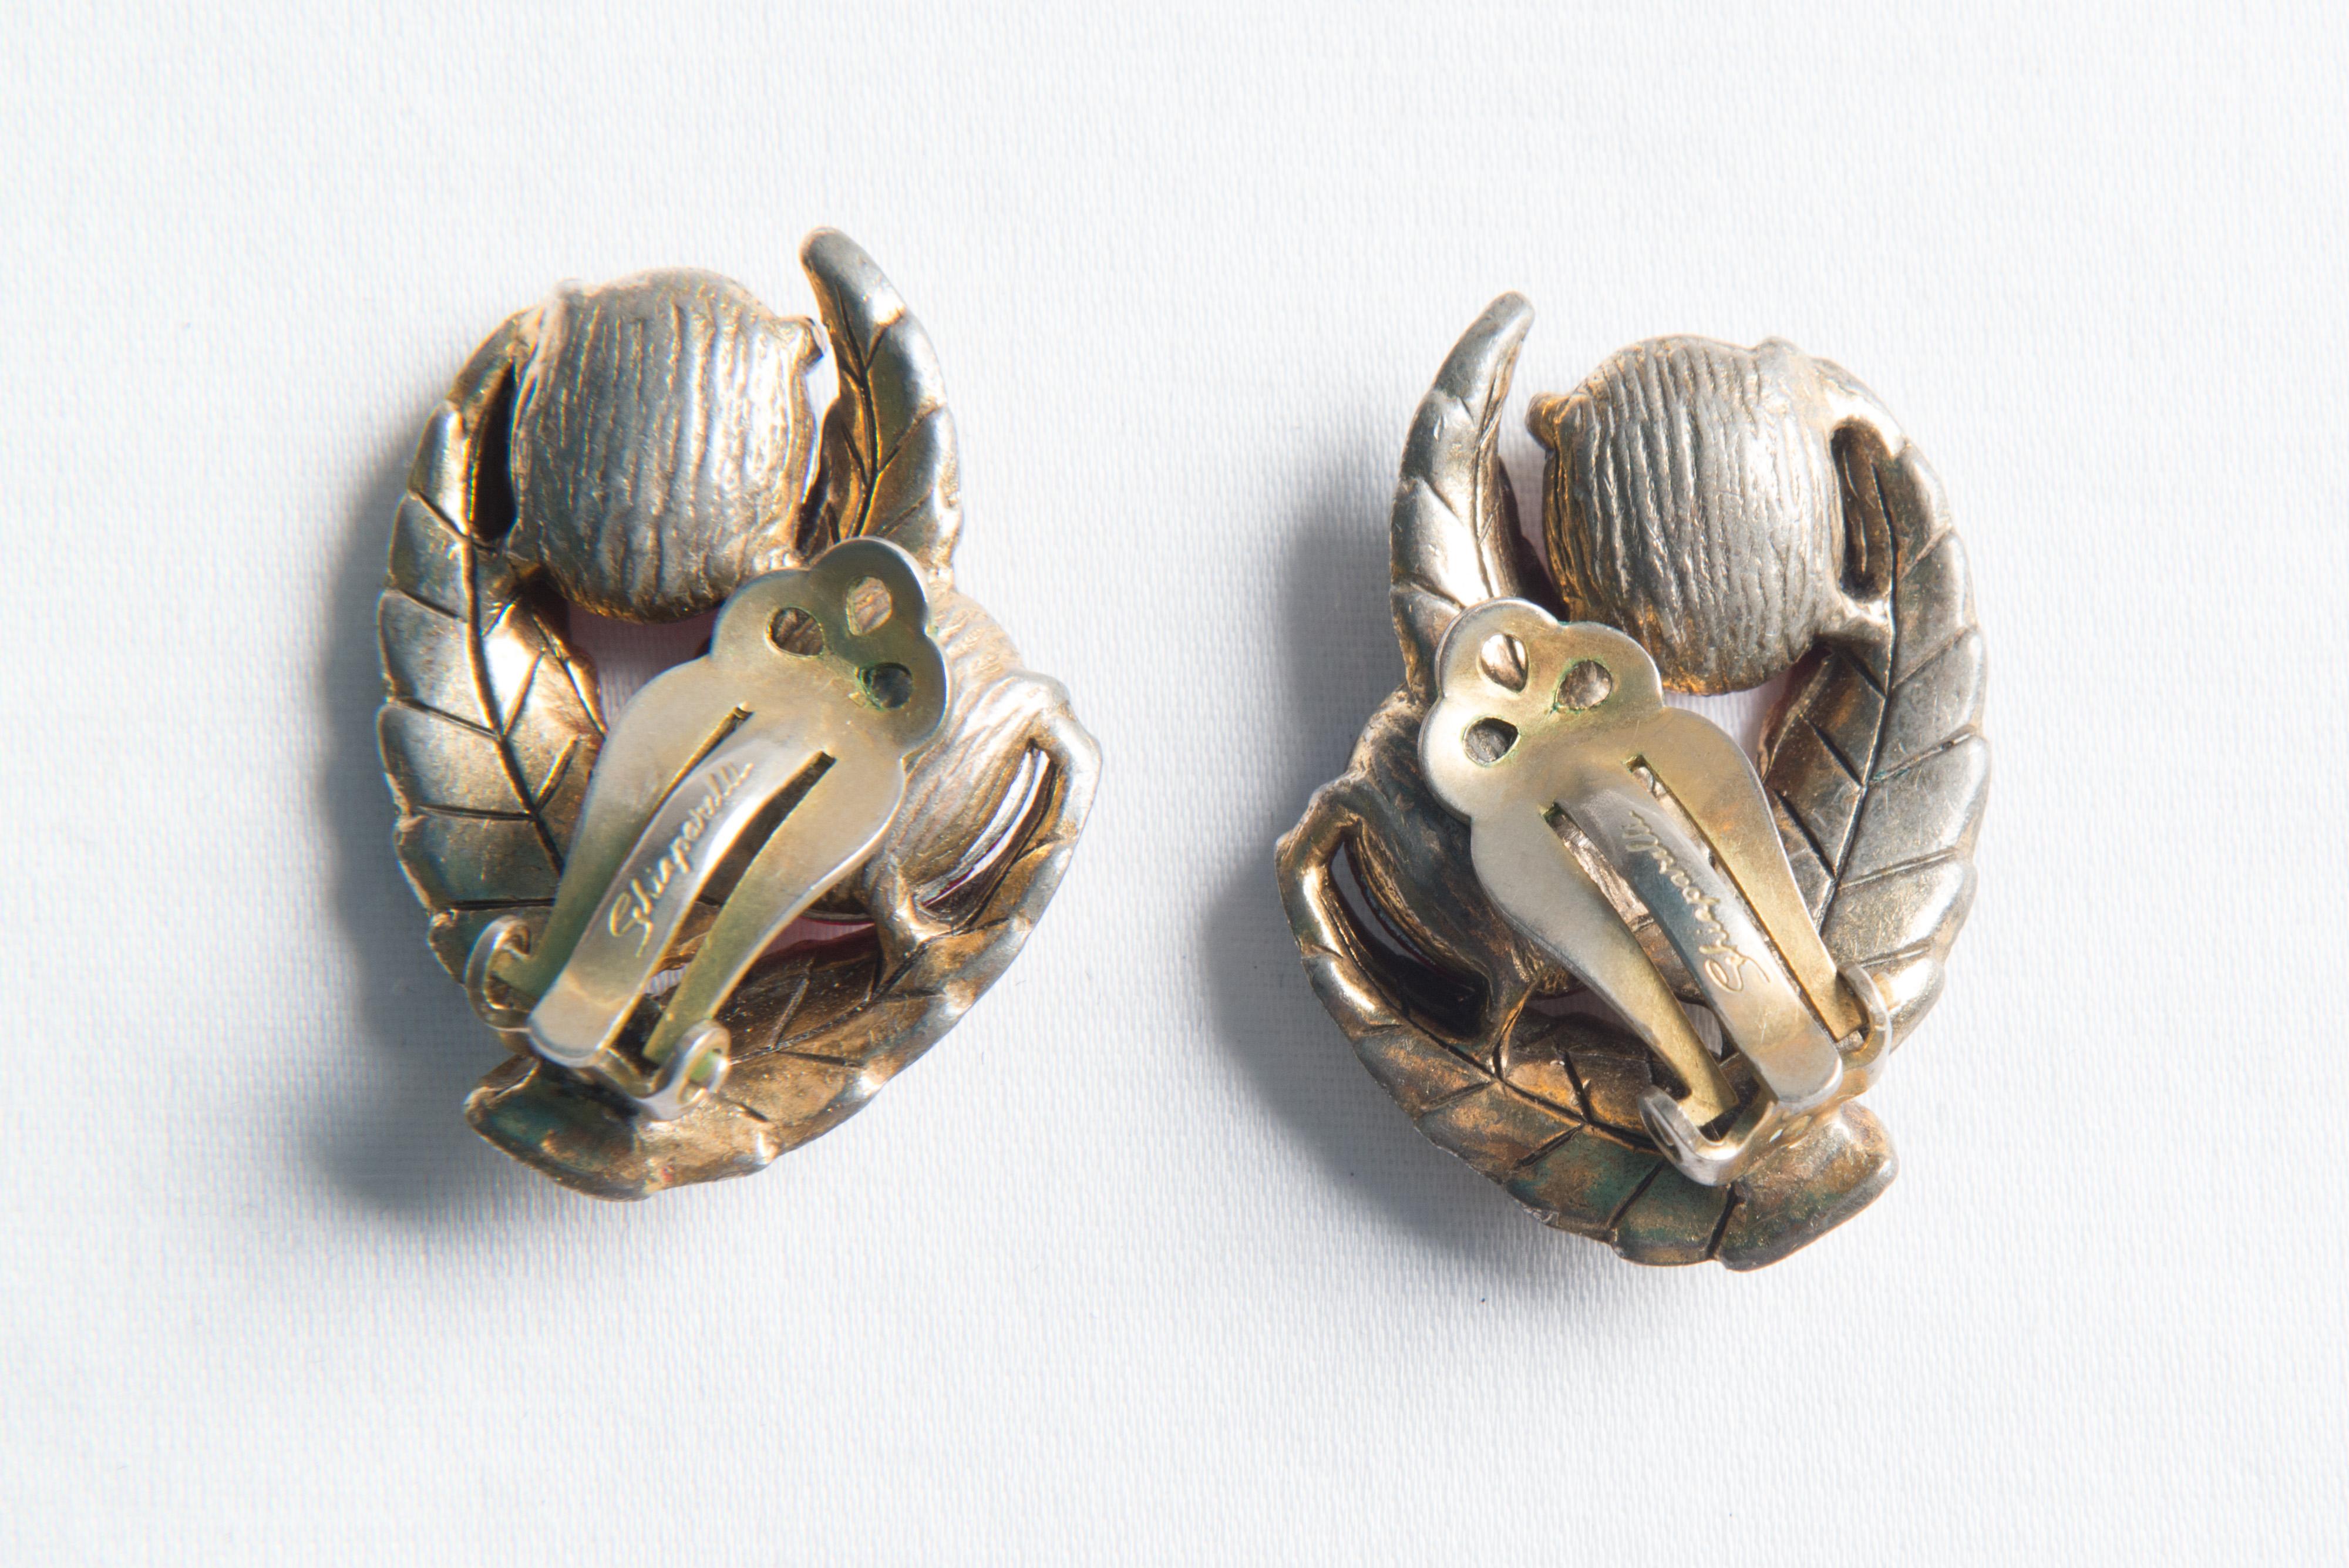 schiaparelli style earrings